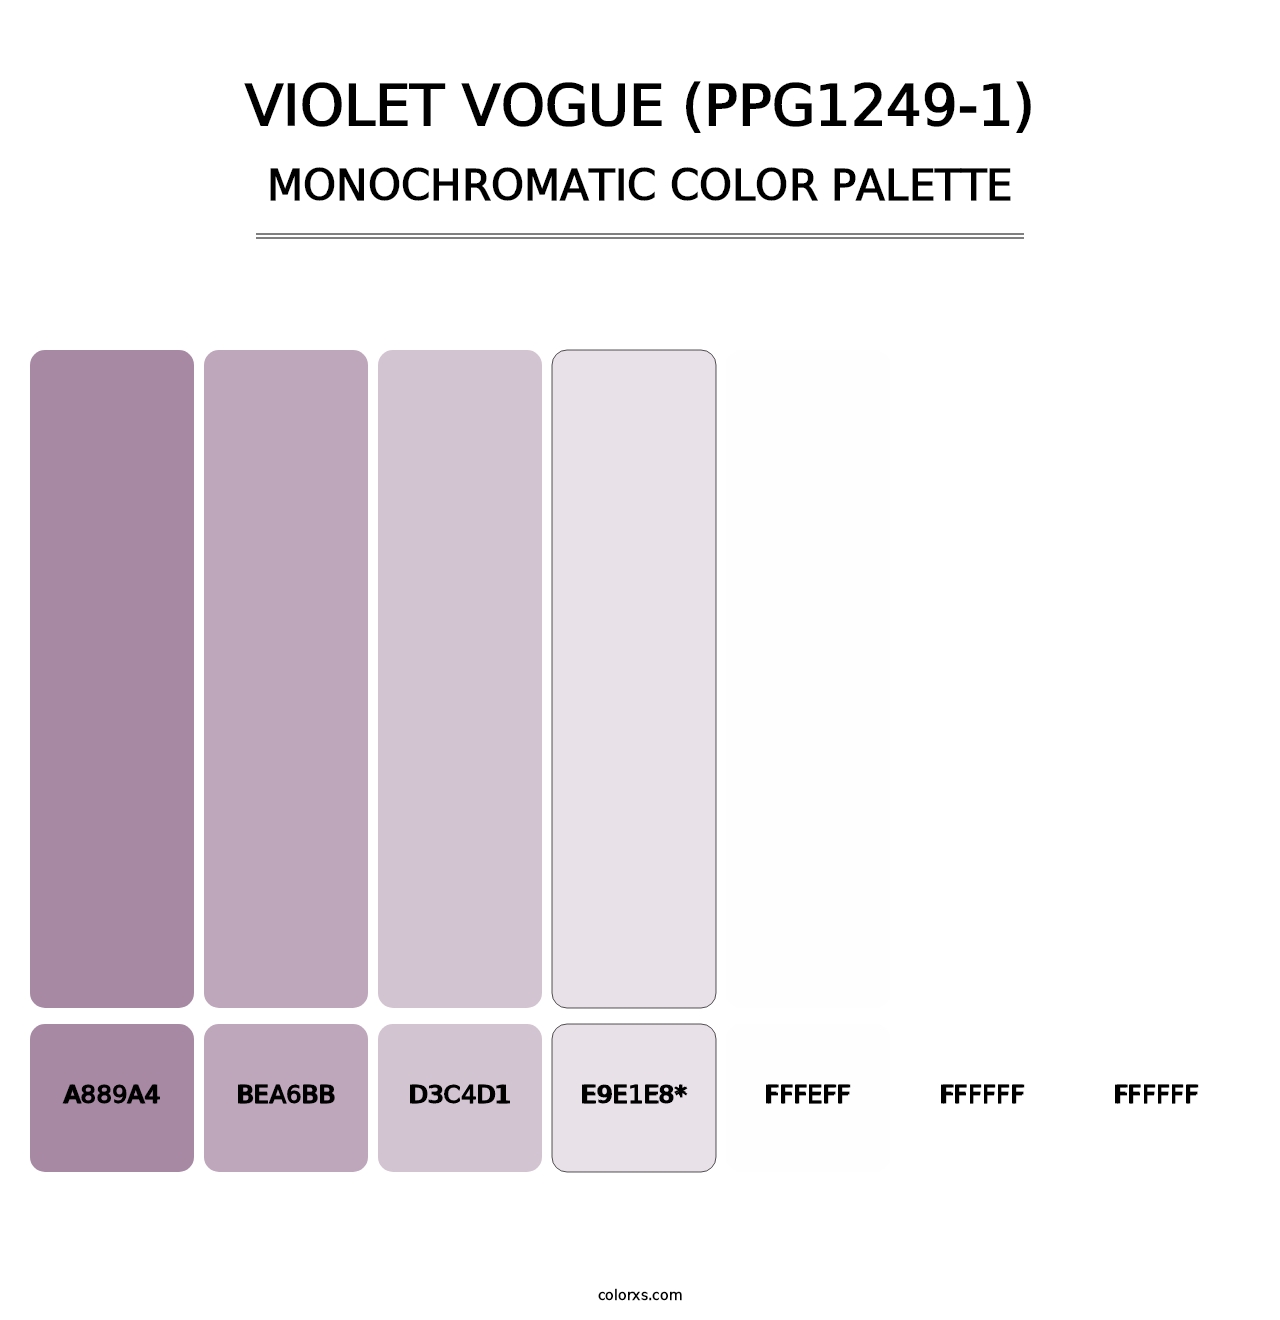 Violet Vogue (PPG1249-1) - Monochromatic Color Palette